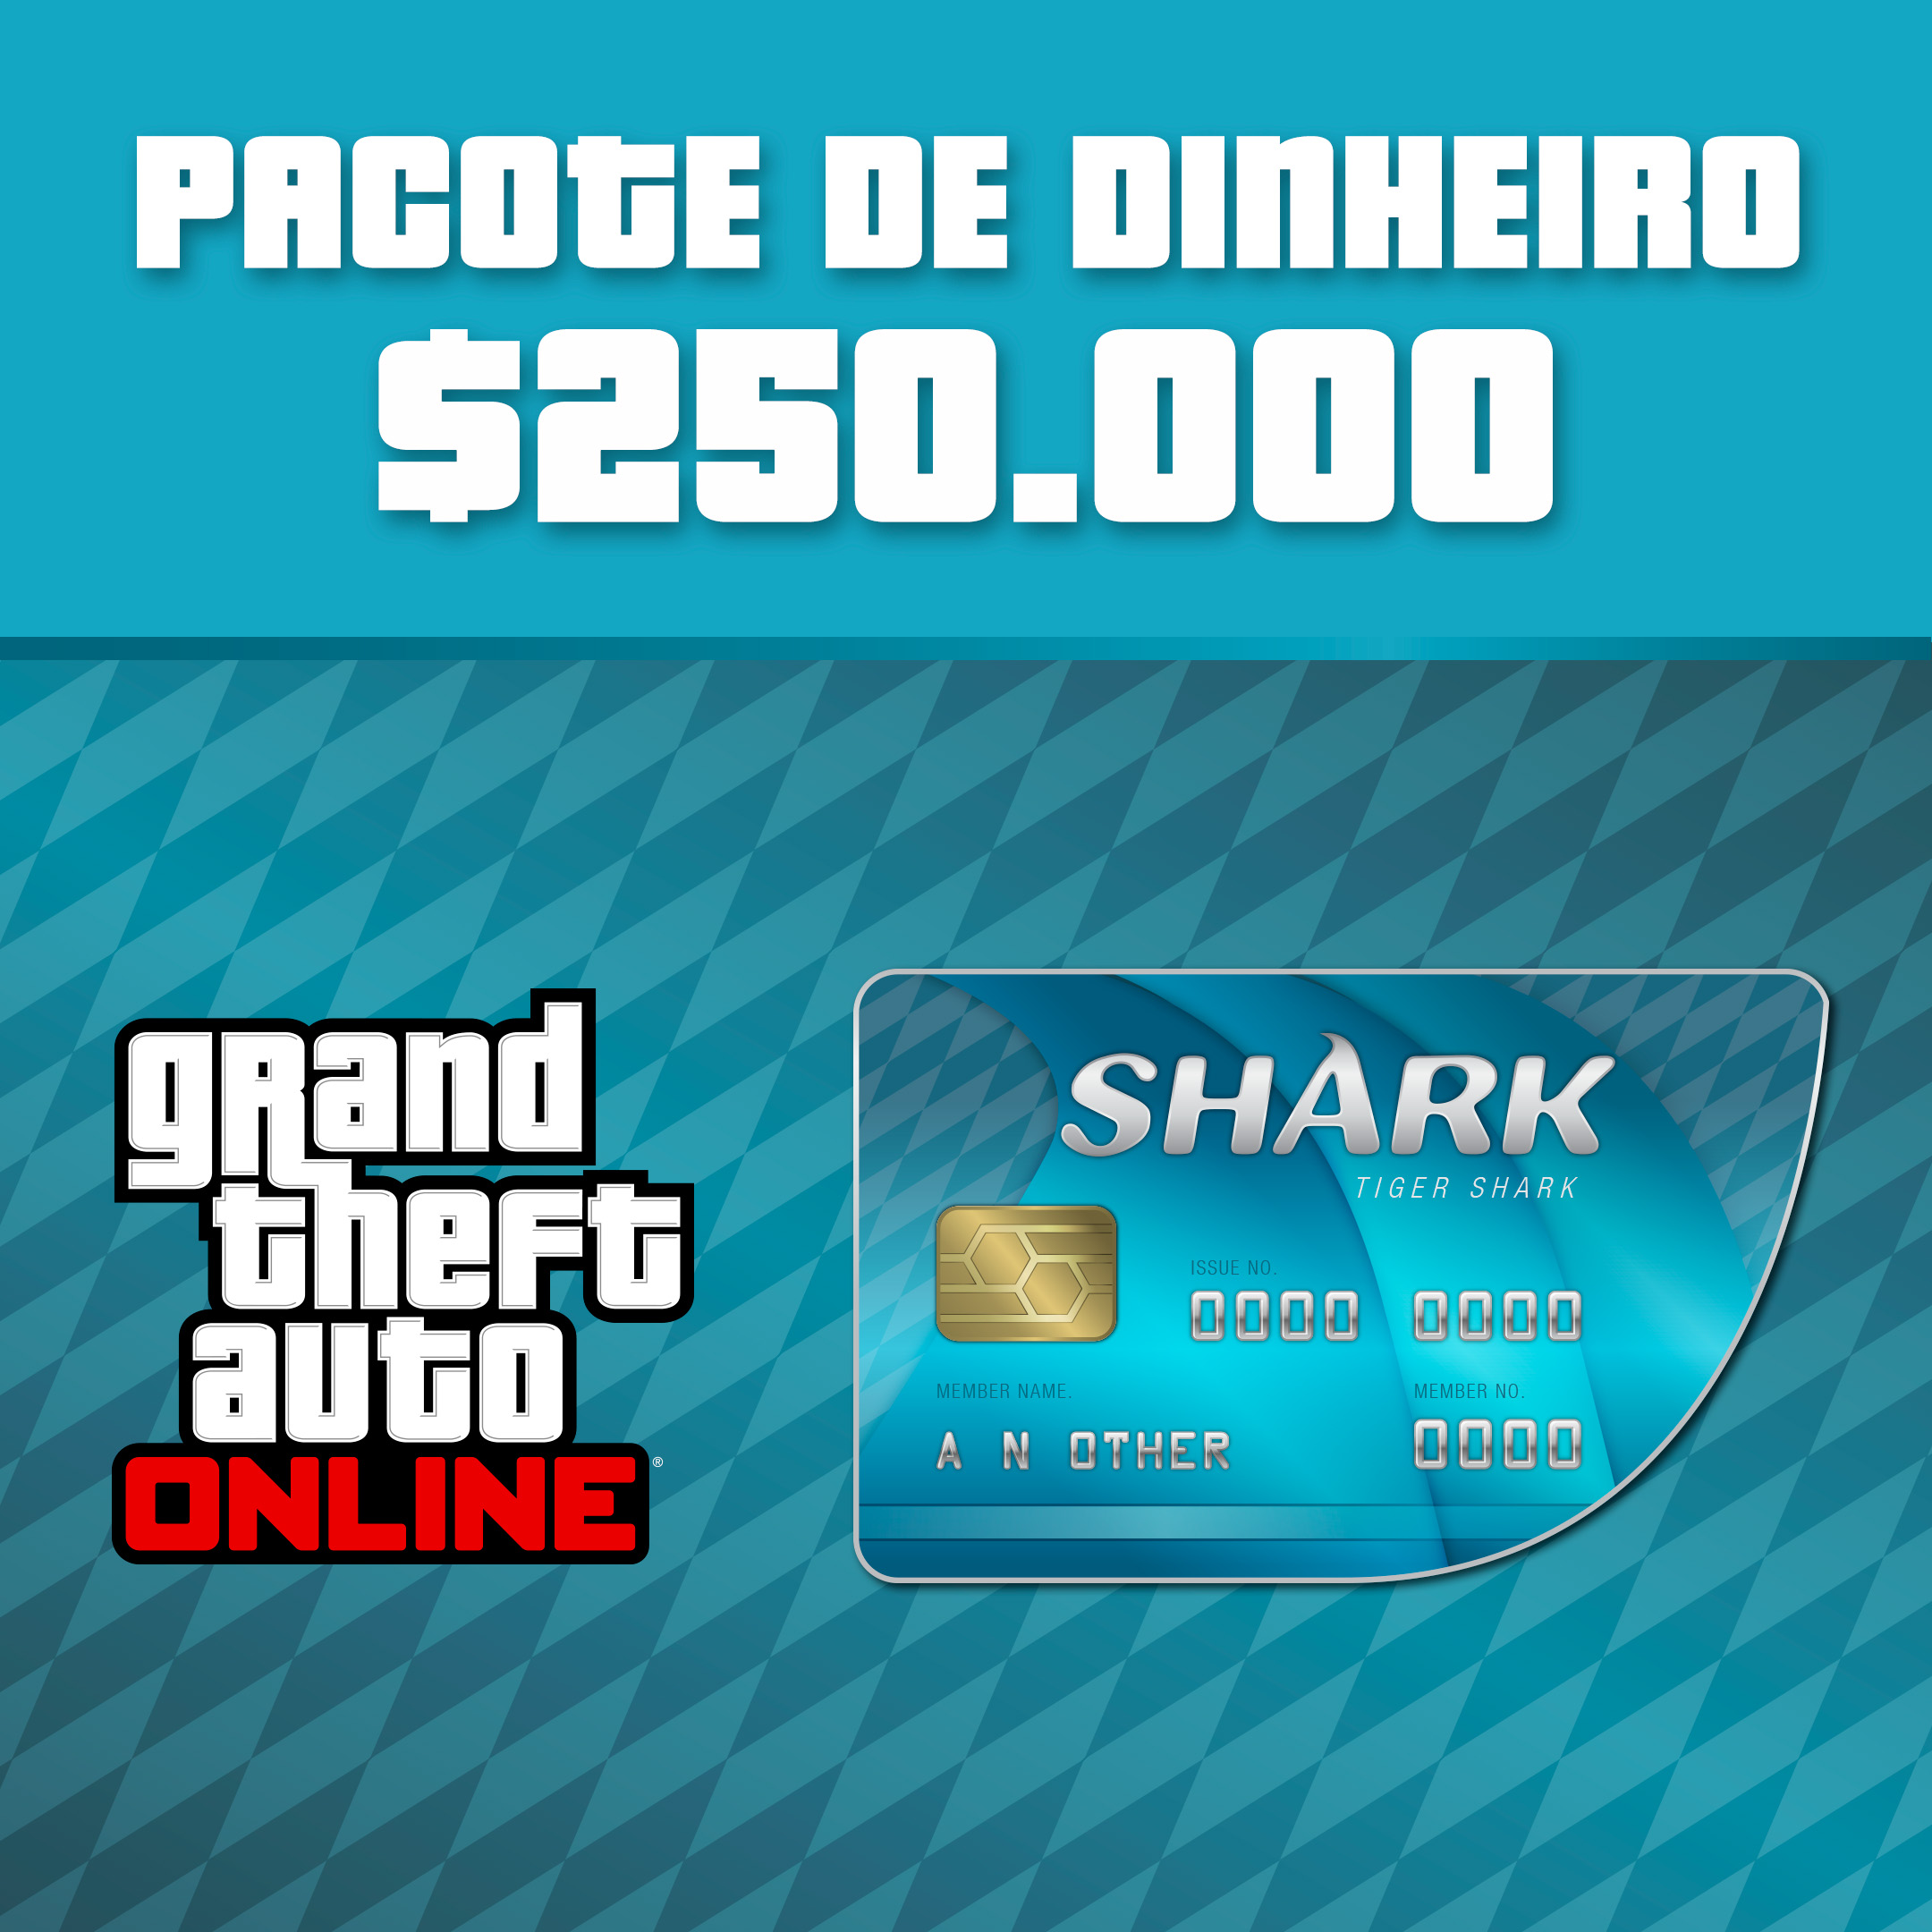 Grand Theft Auto V Ed. Premium + Tubarão-branco - 25 Dígitos